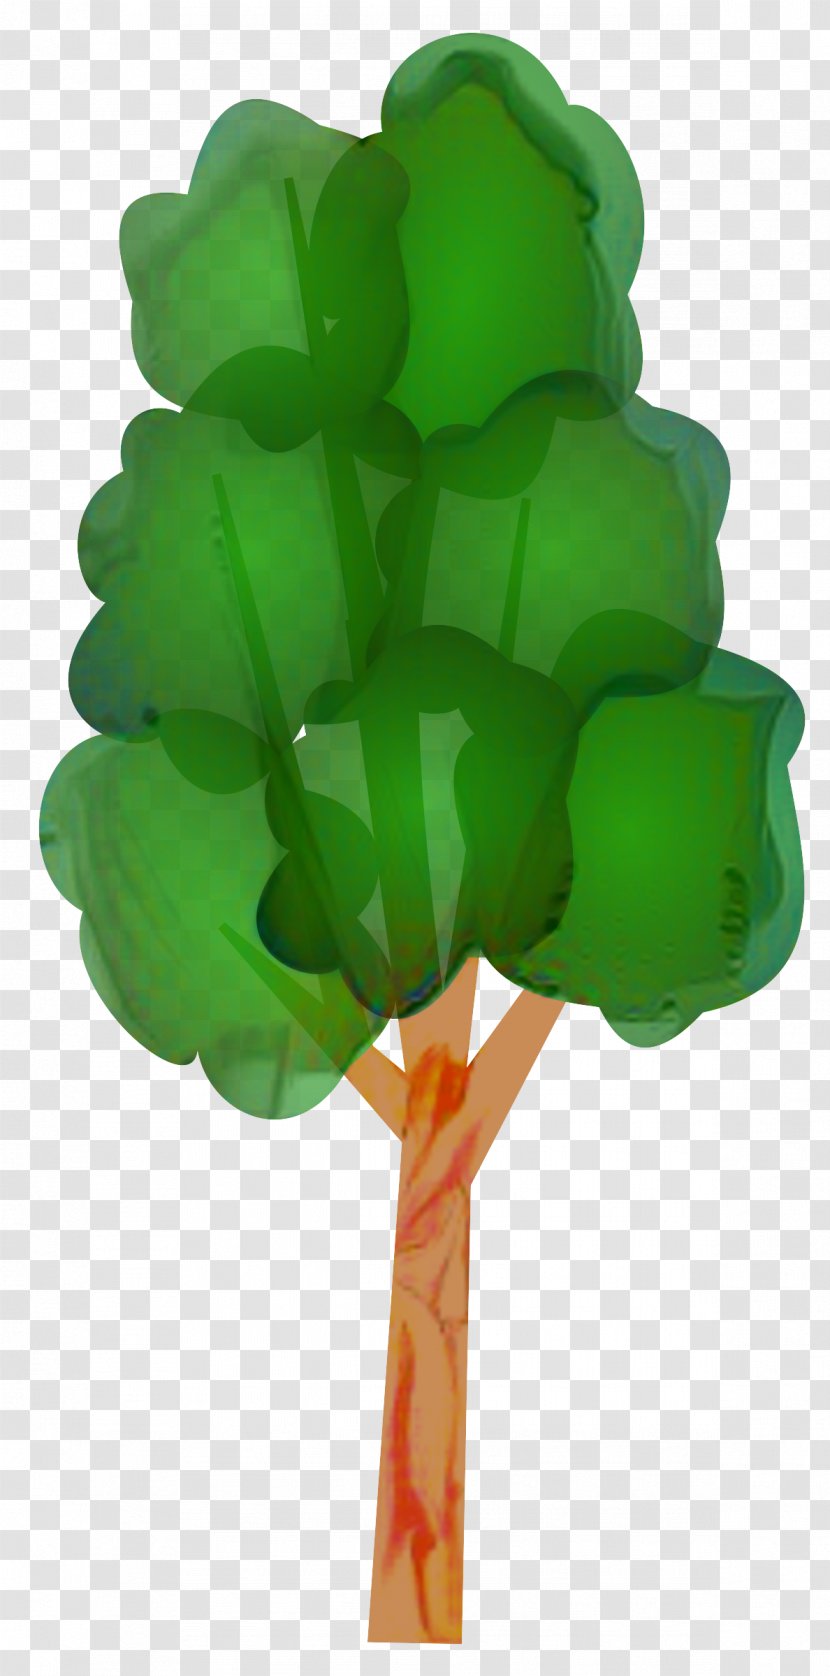 Green Leaf Background - Plant Stem Symbol Transparent PNG